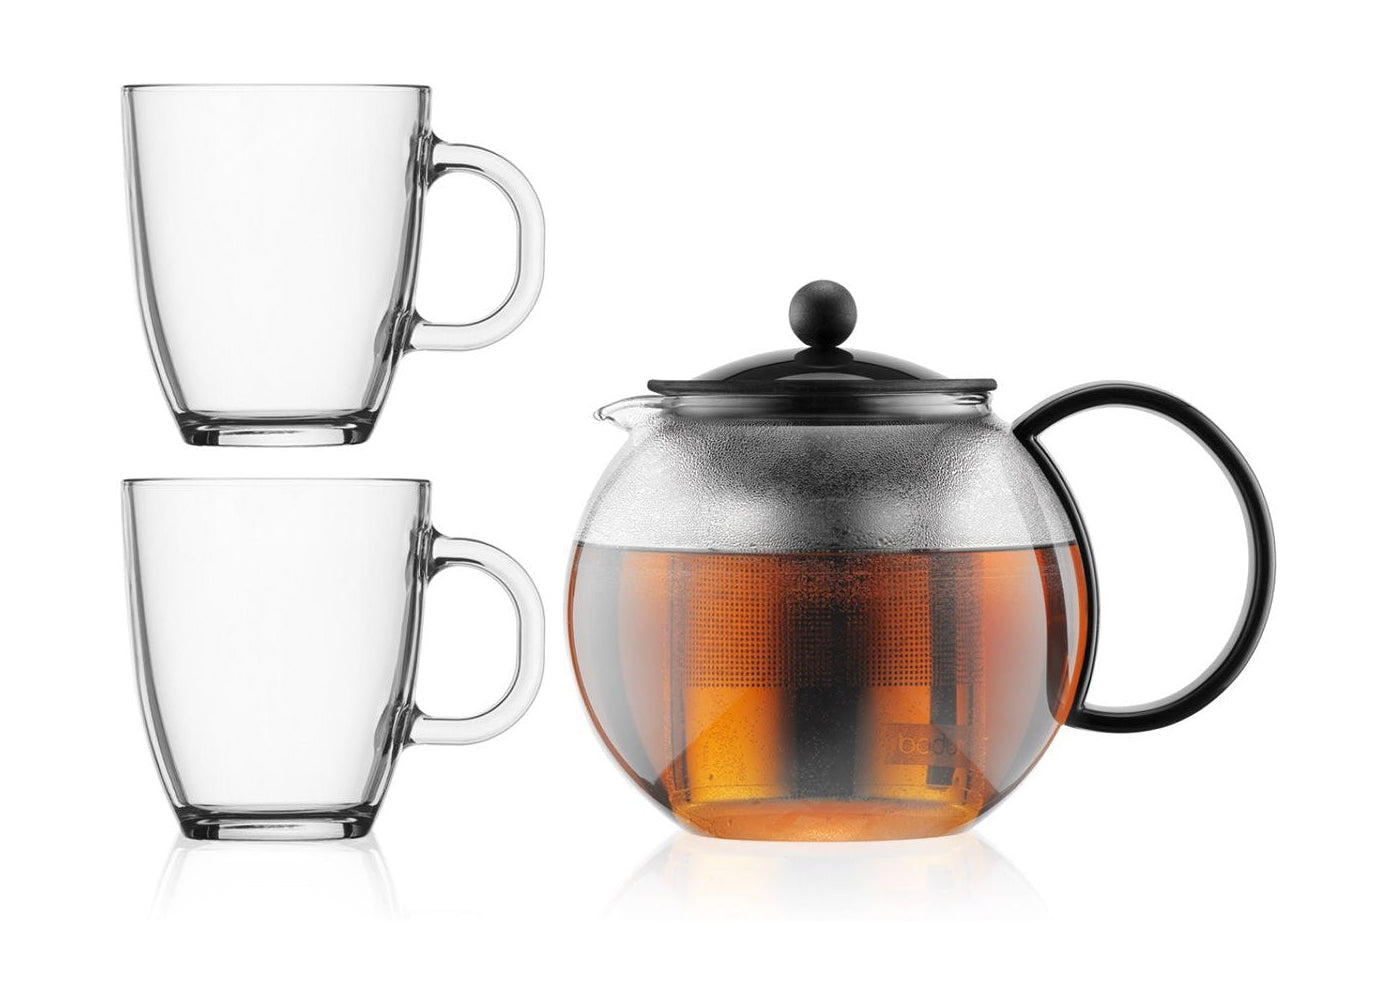 Bodum Assam satte teproducent med filter og kopglas, 2 stk.